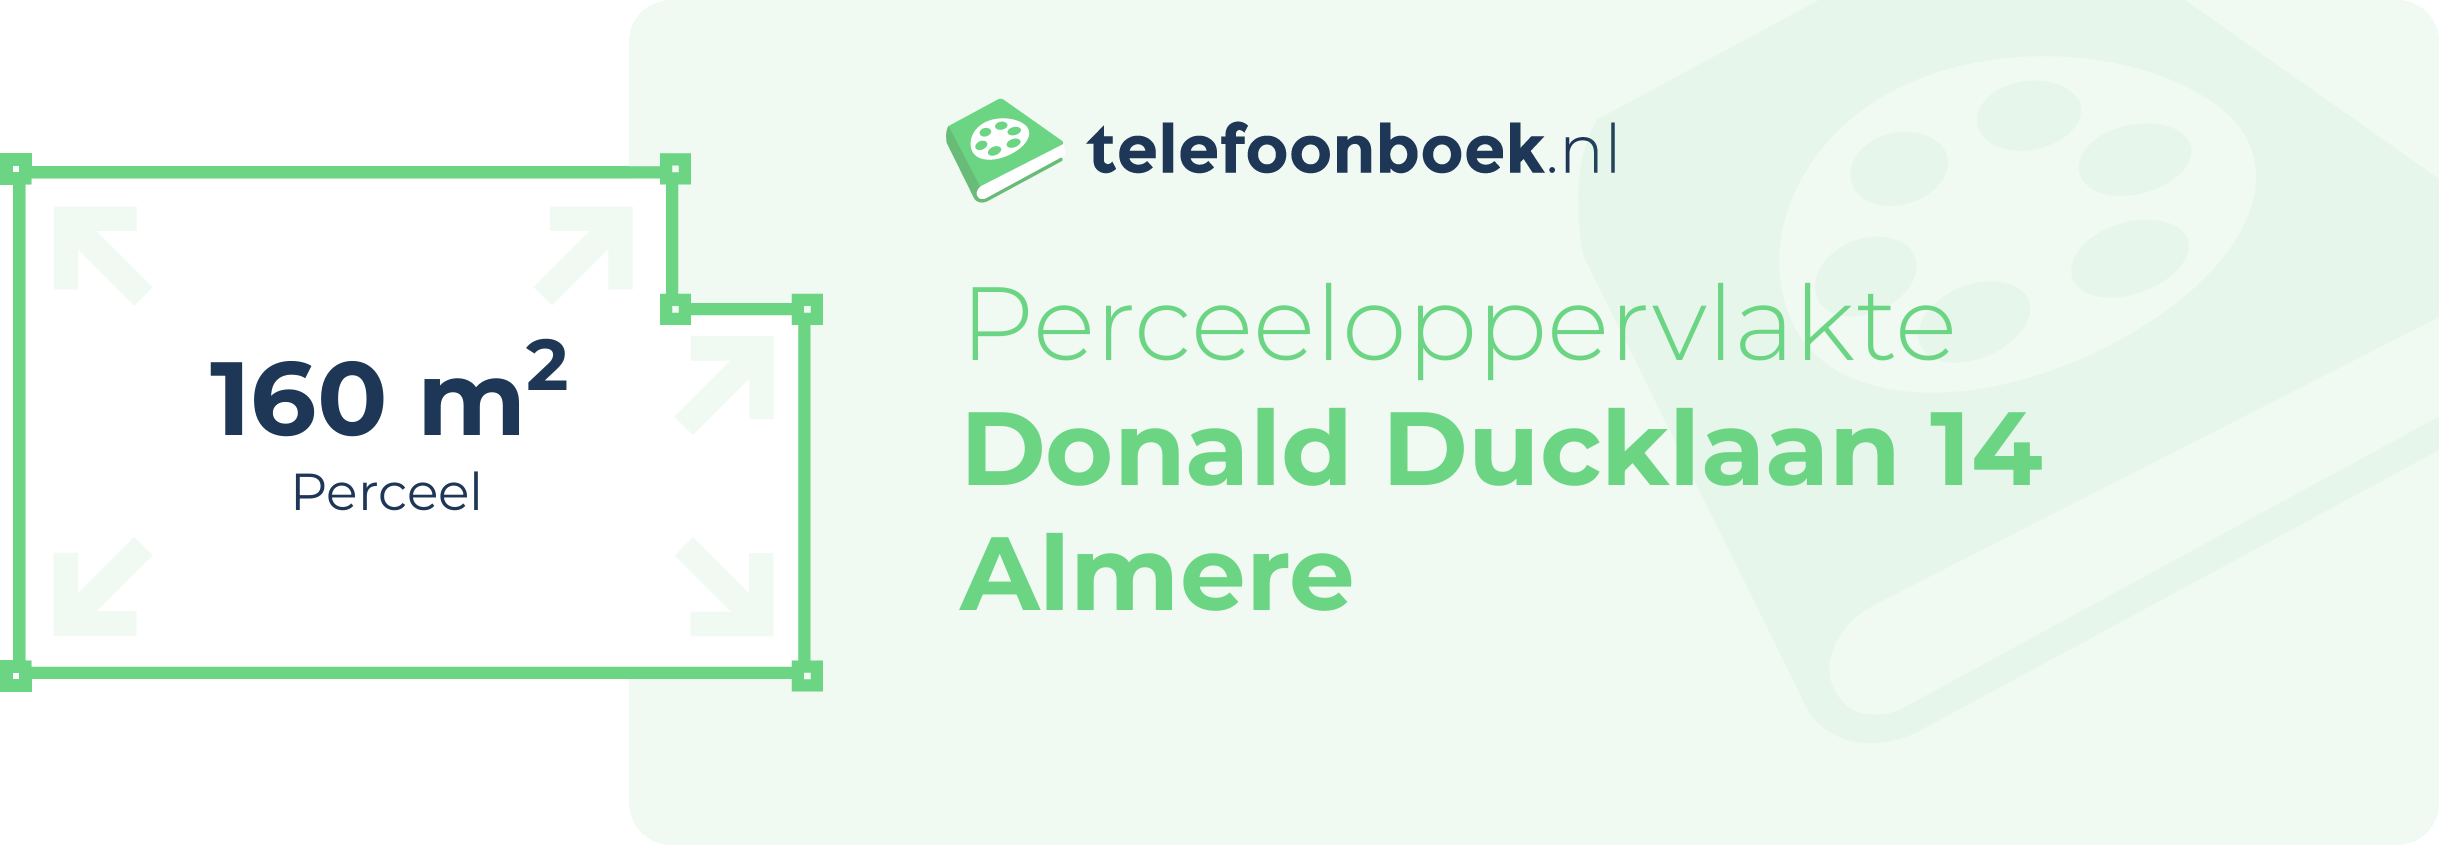 Perceeloppervlakte Donald Ducklaan 14 Almere